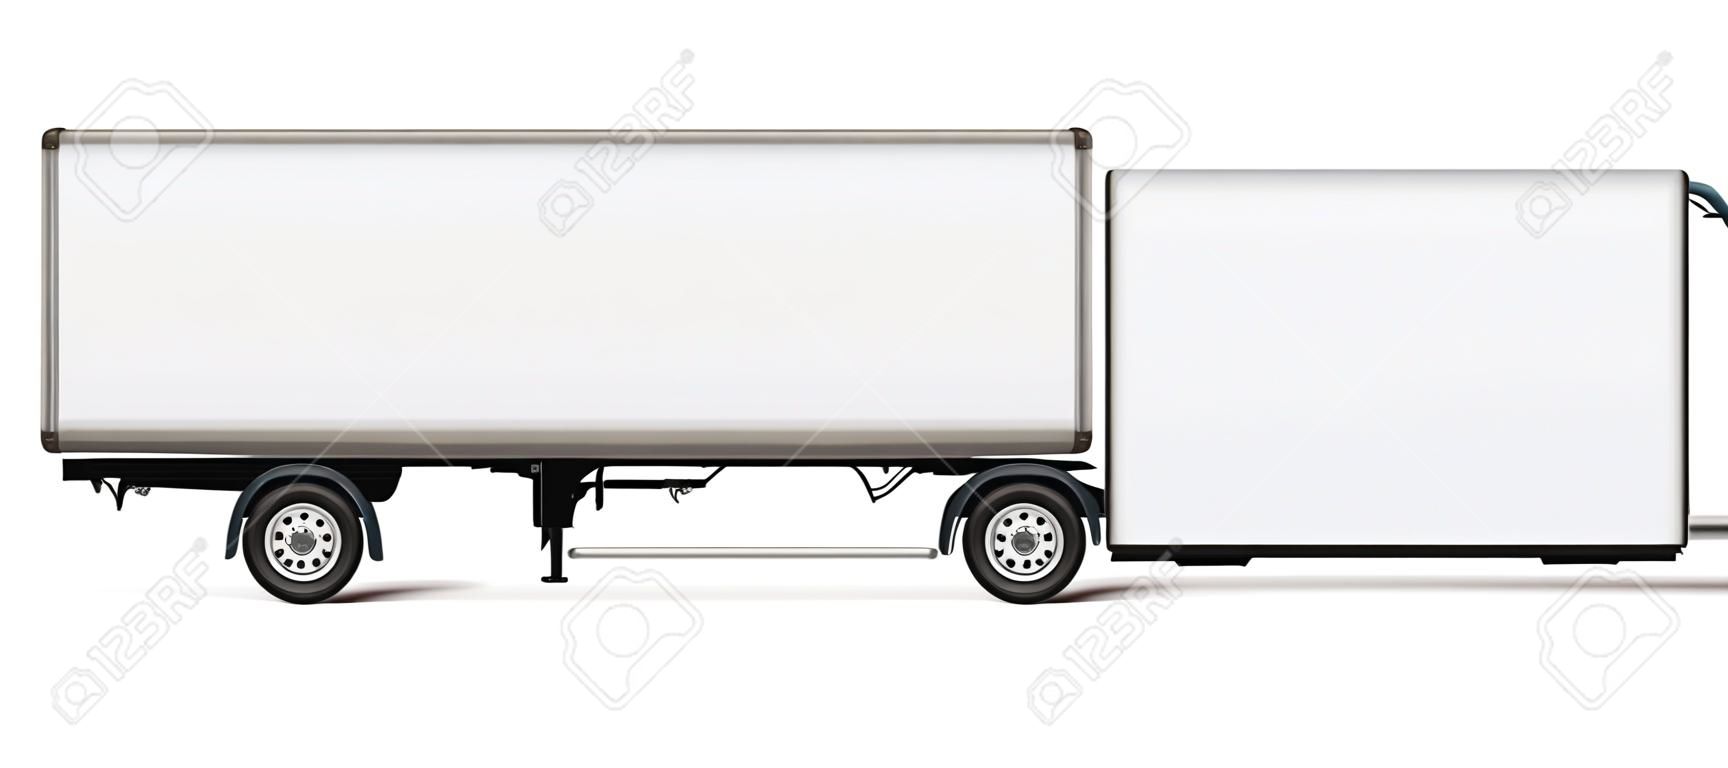 세미 트레일러 트럭 벡터 템플릿입니다. 차량 브랜딩, 기업 아이덴티티를 위한 흰색 트레일러가 있는 격리된 트럭. 쉽게 편집하고 다시 칠할 수 있도록 별도의 레이어에 있는 그룹의 모든 요소